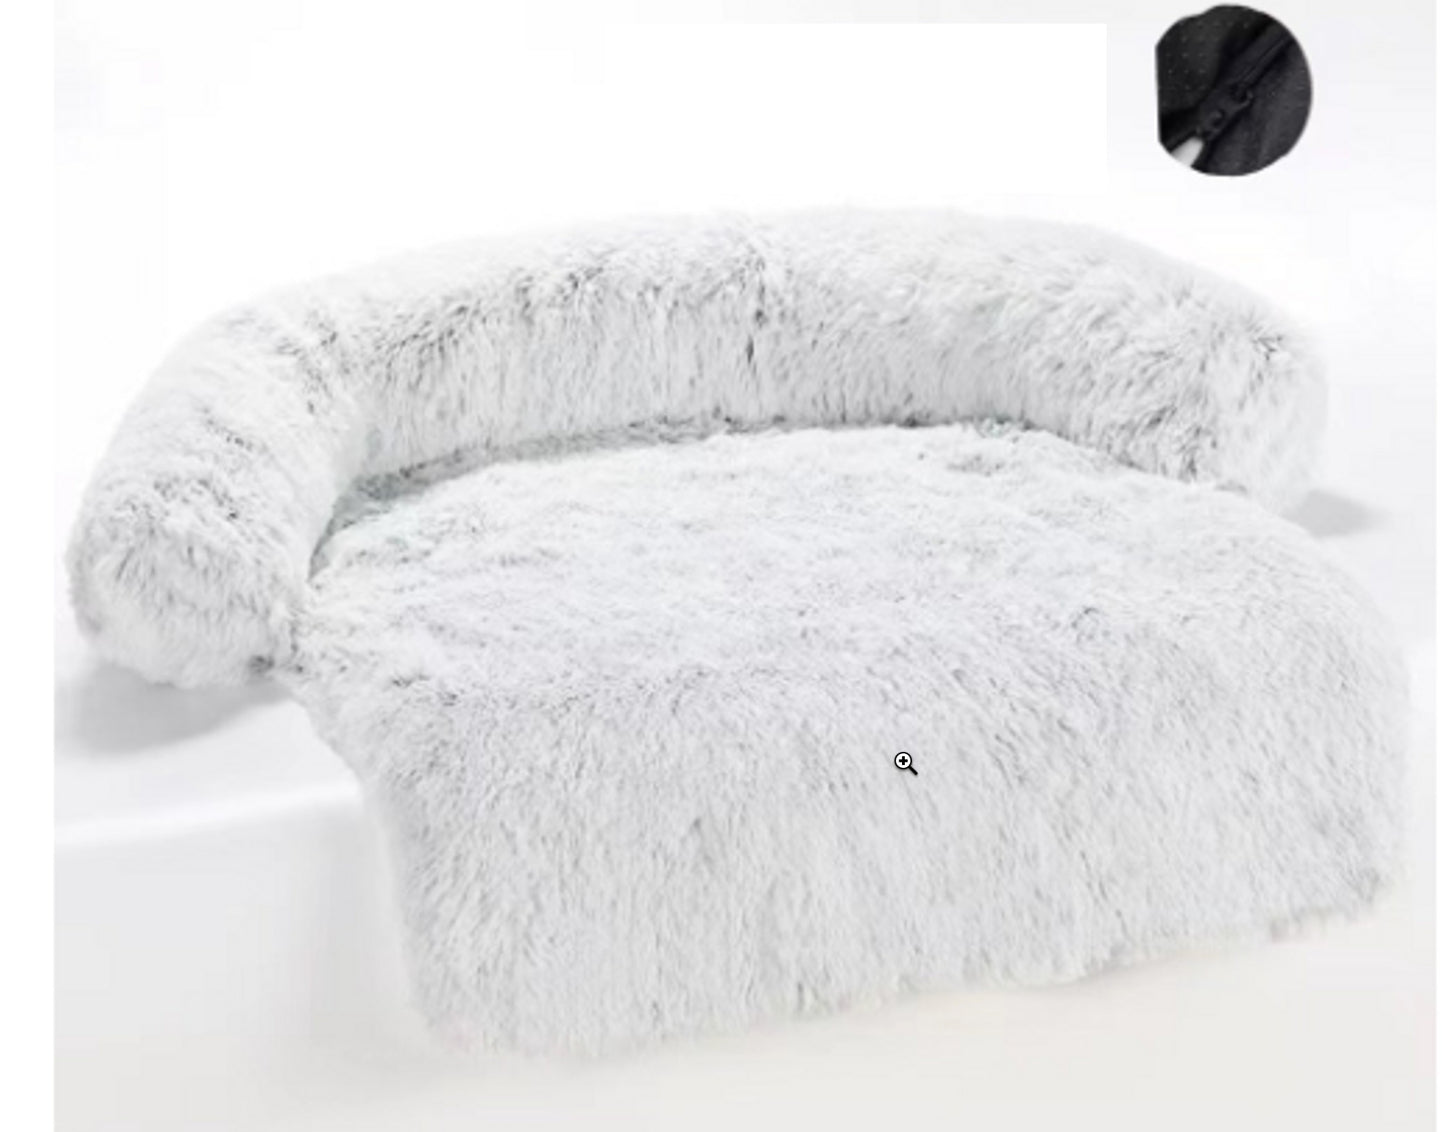 Dog Bed Cushion